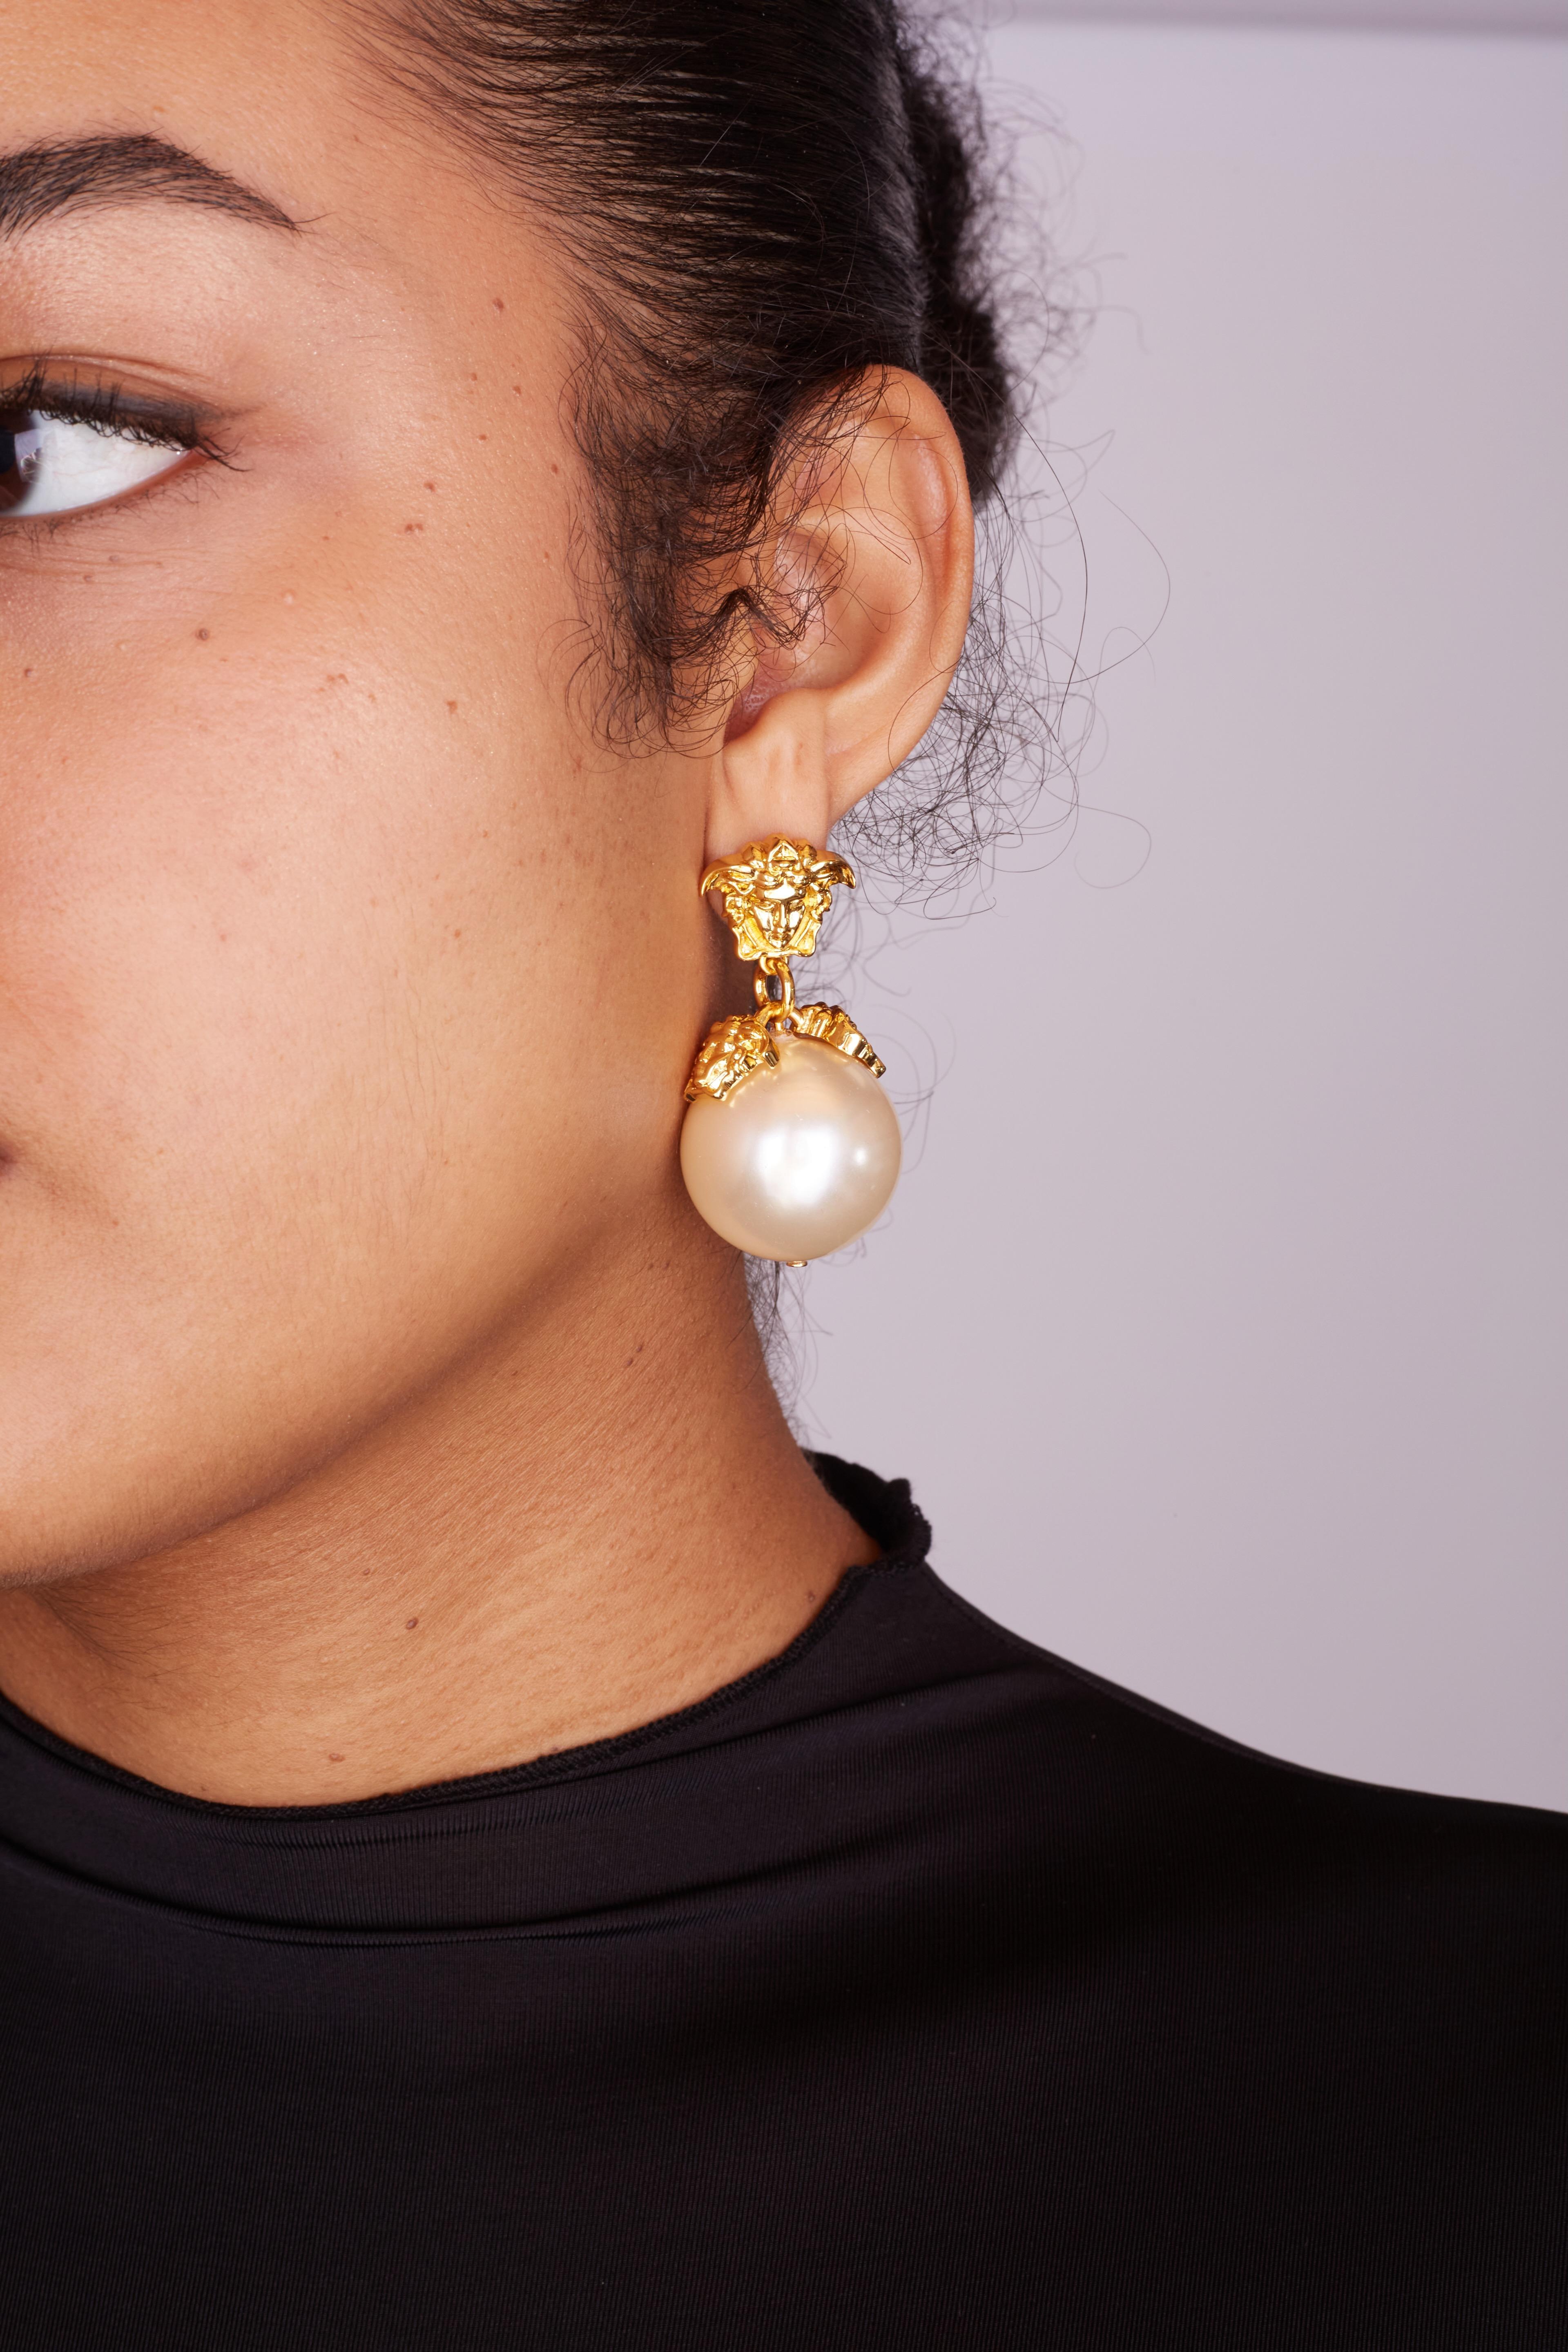 VERSACE - BOUCLES D'OREILLES PENDANTES EN FAUSSE PERLE MÉDUSA MÉTALLISÉE

Ces boucles d'oreilles classiques Versace sont composées de fausses perles et de métal doré. Elles sont ornées de la méduse emblématique de la marque et d'une perle blanche